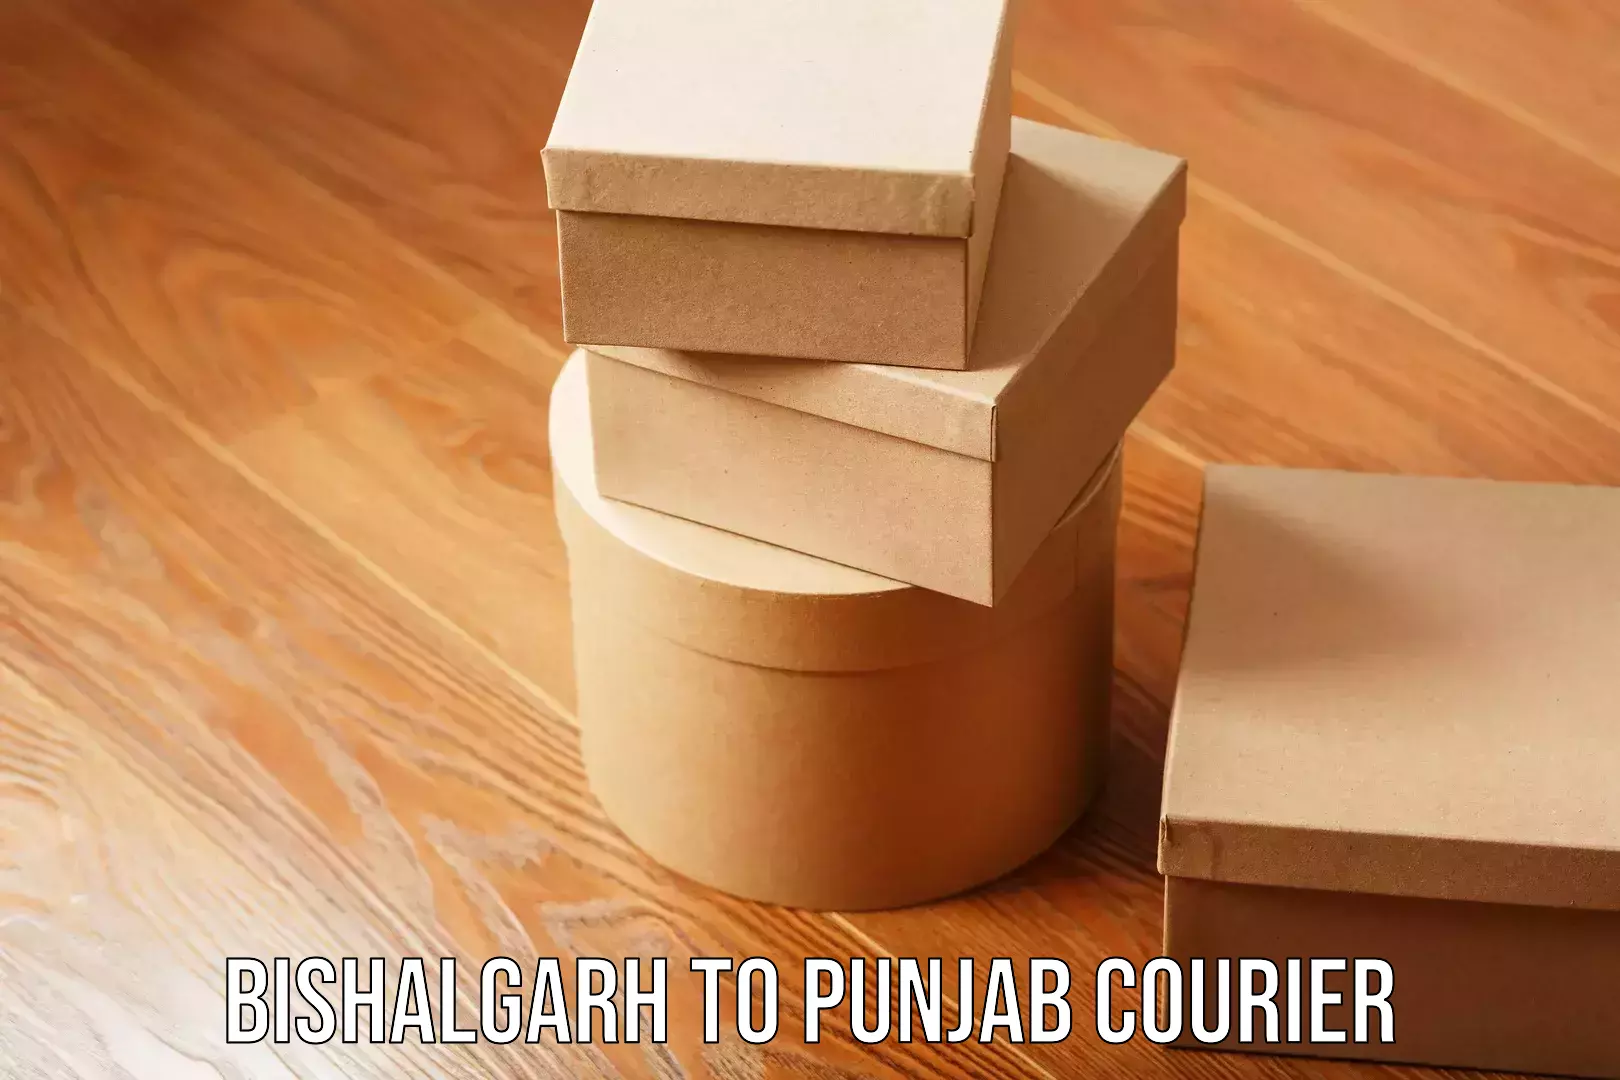 Courier insurance in Bishalgarh to Punjab